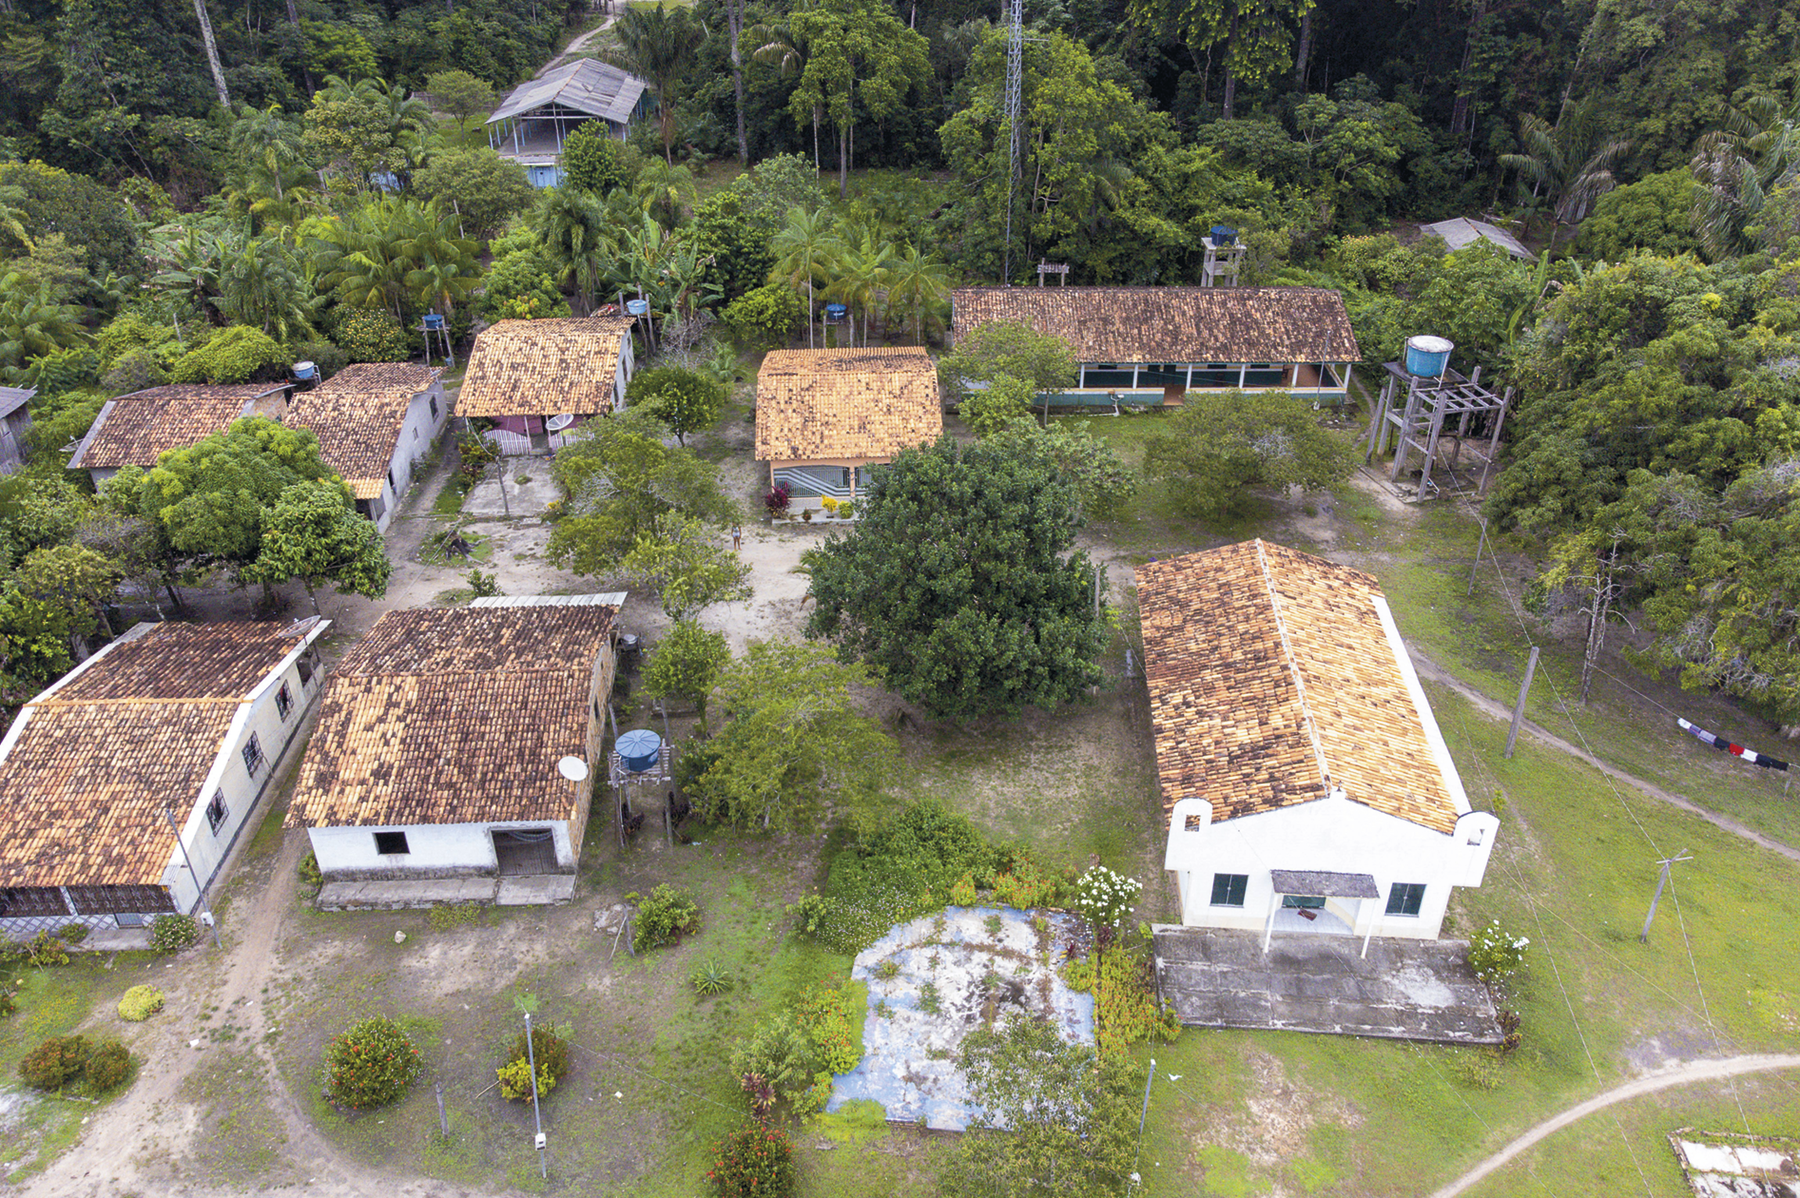 Fotografia. Vista aérea. Casas com telhados em uma região de terra, com vegetação rasteira e muitas árvores ao redor.